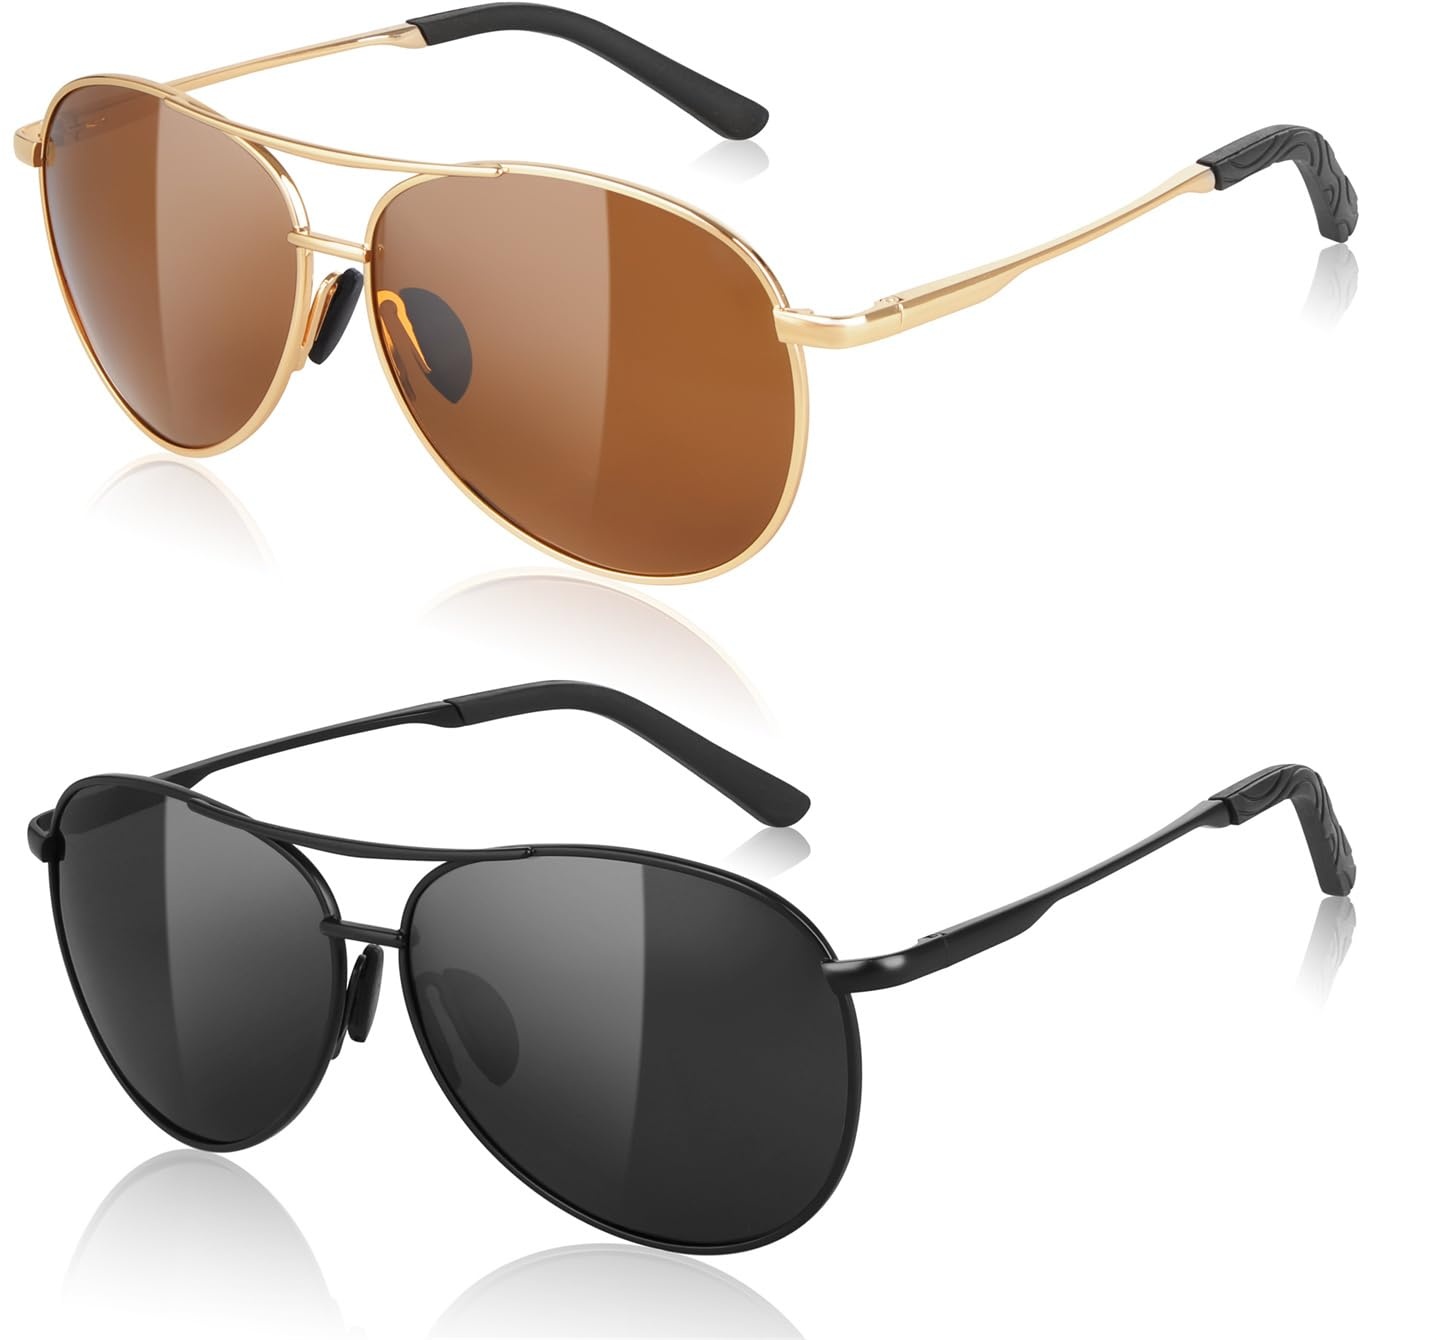 Chanstha 2 Paare Sonnenbrille-Herren-Damen-Polarisiert Premium Metallrahmen Sonnenbrillen, Vintage/Klassisch/Elegant UV400 CAT 3 CE, Fahren/Golf/Reisebrille/Outdoor-Sportarten Mode Sunglasses Men - 141*50